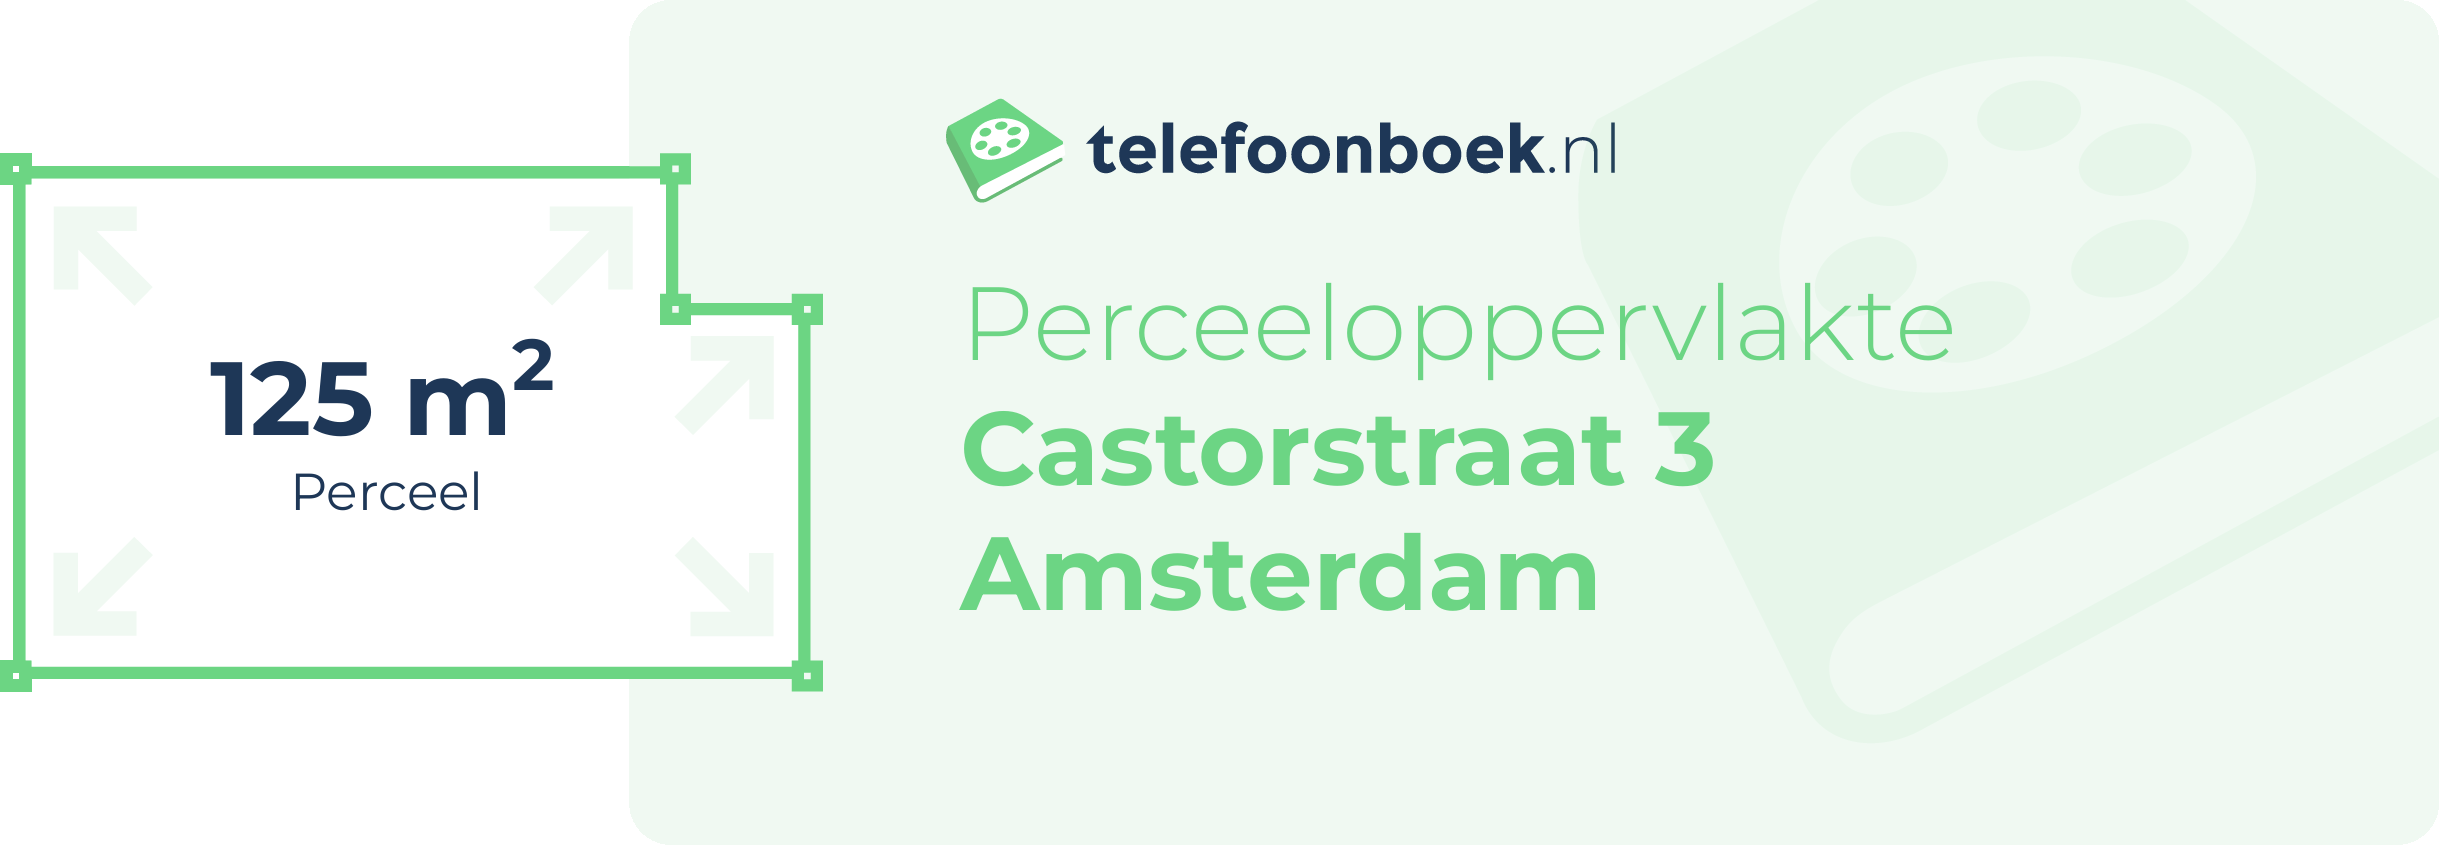 Perceeloppervlakte Castorstraat 3 Amsterdam